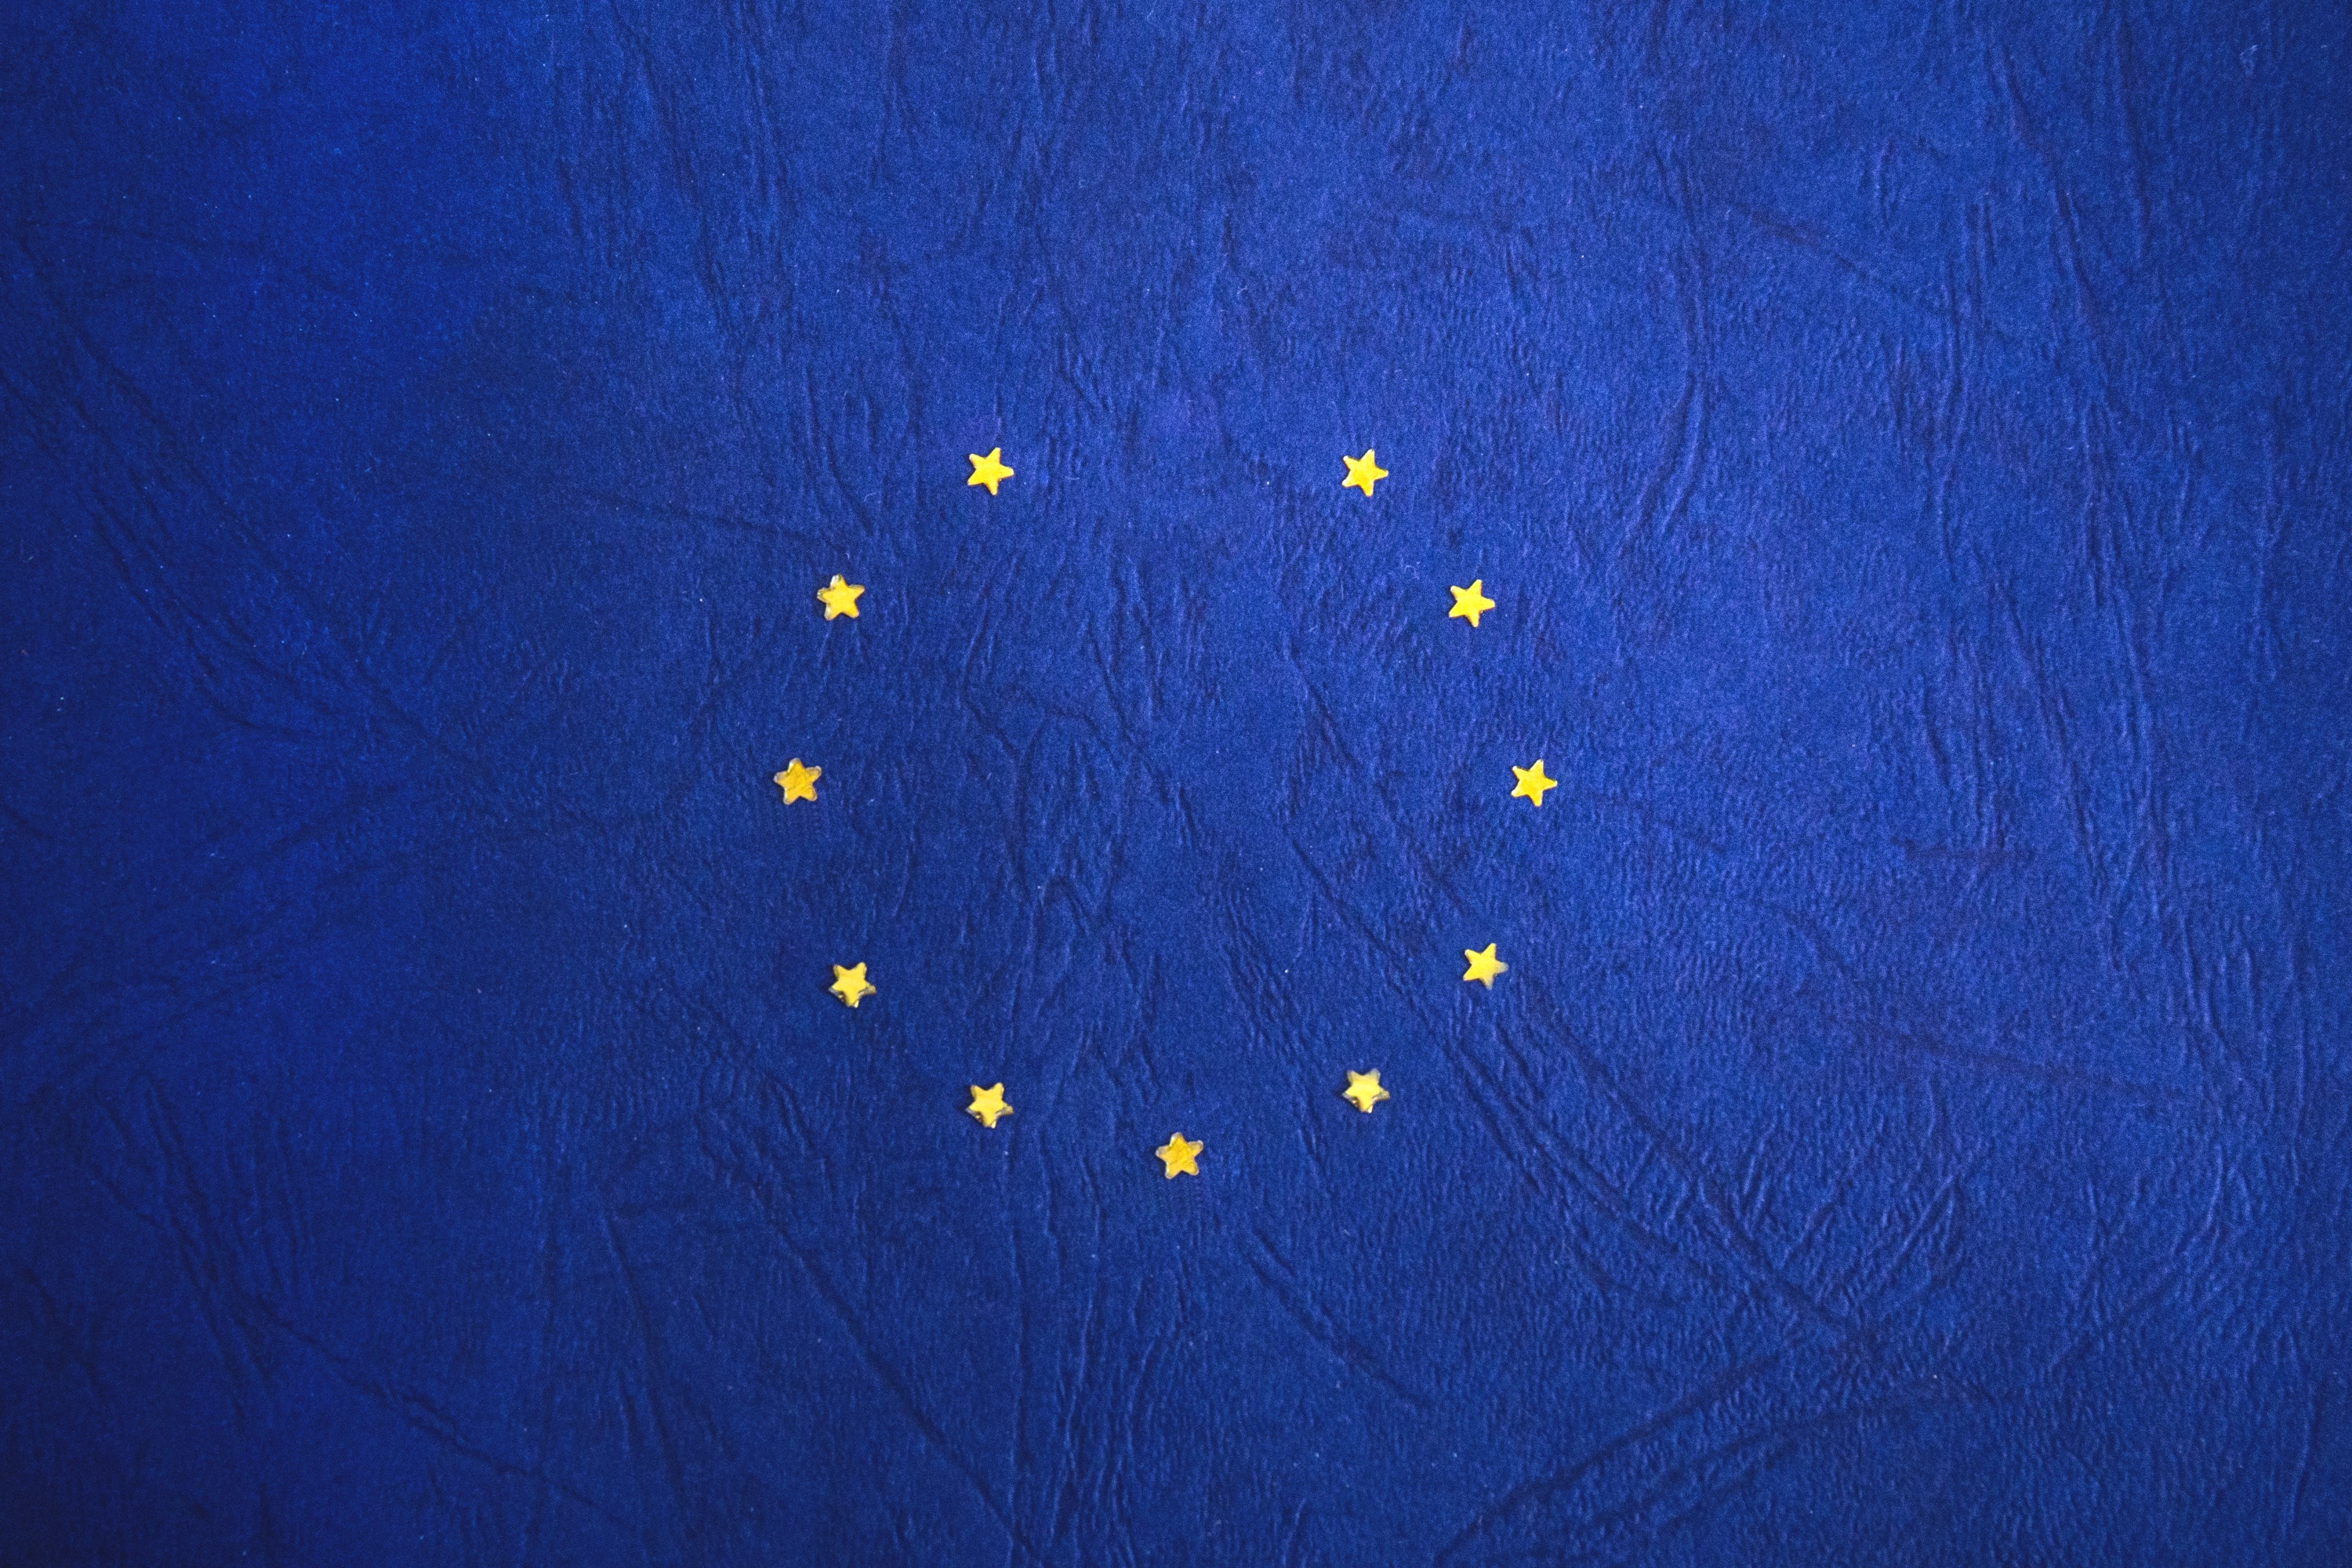 Flaga Unii Europejskiej bez jednej gwiazdki symbolizująca brexit